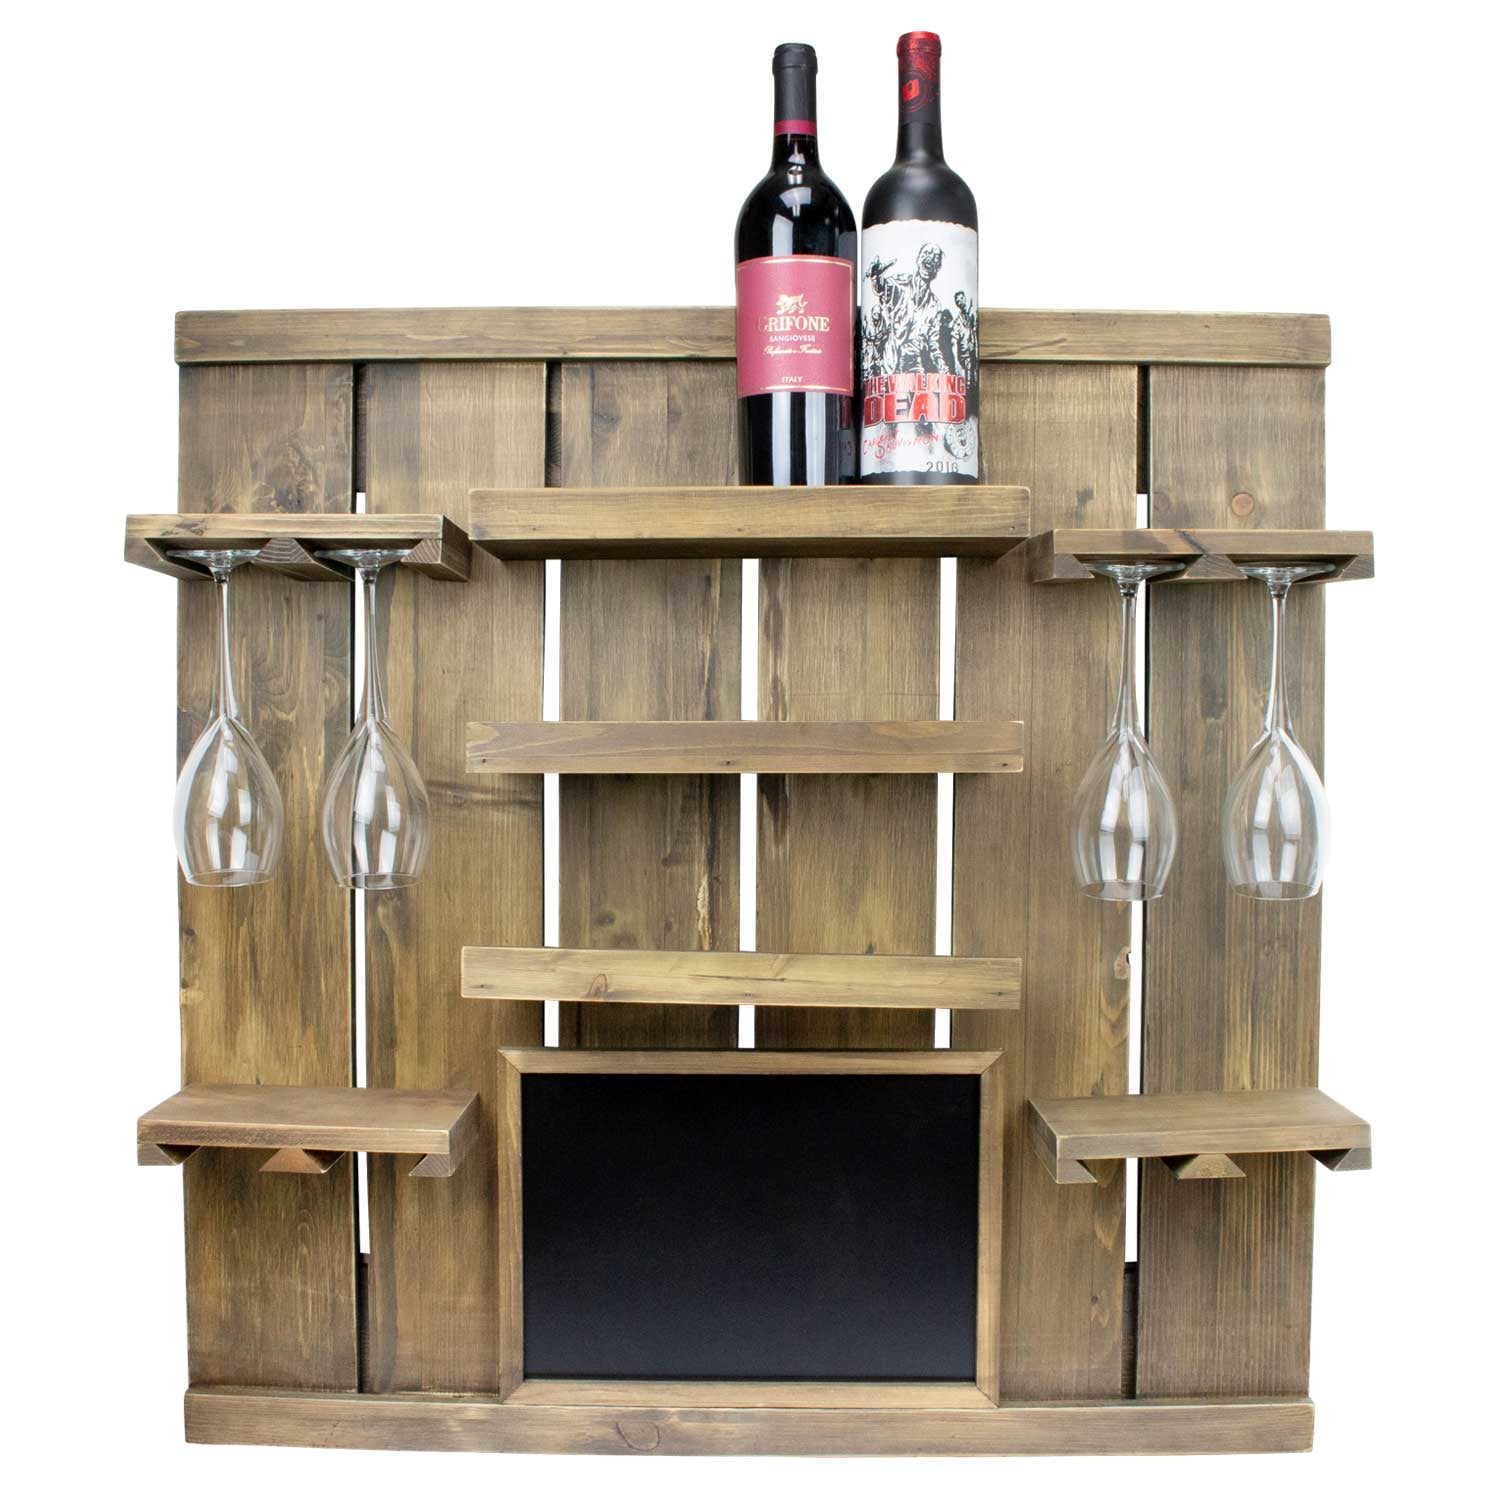 Atterstone Chalkboard Wine Rack Shelf, Wall Mounted, Wooden Wine Rack Shelf, Comes with 3